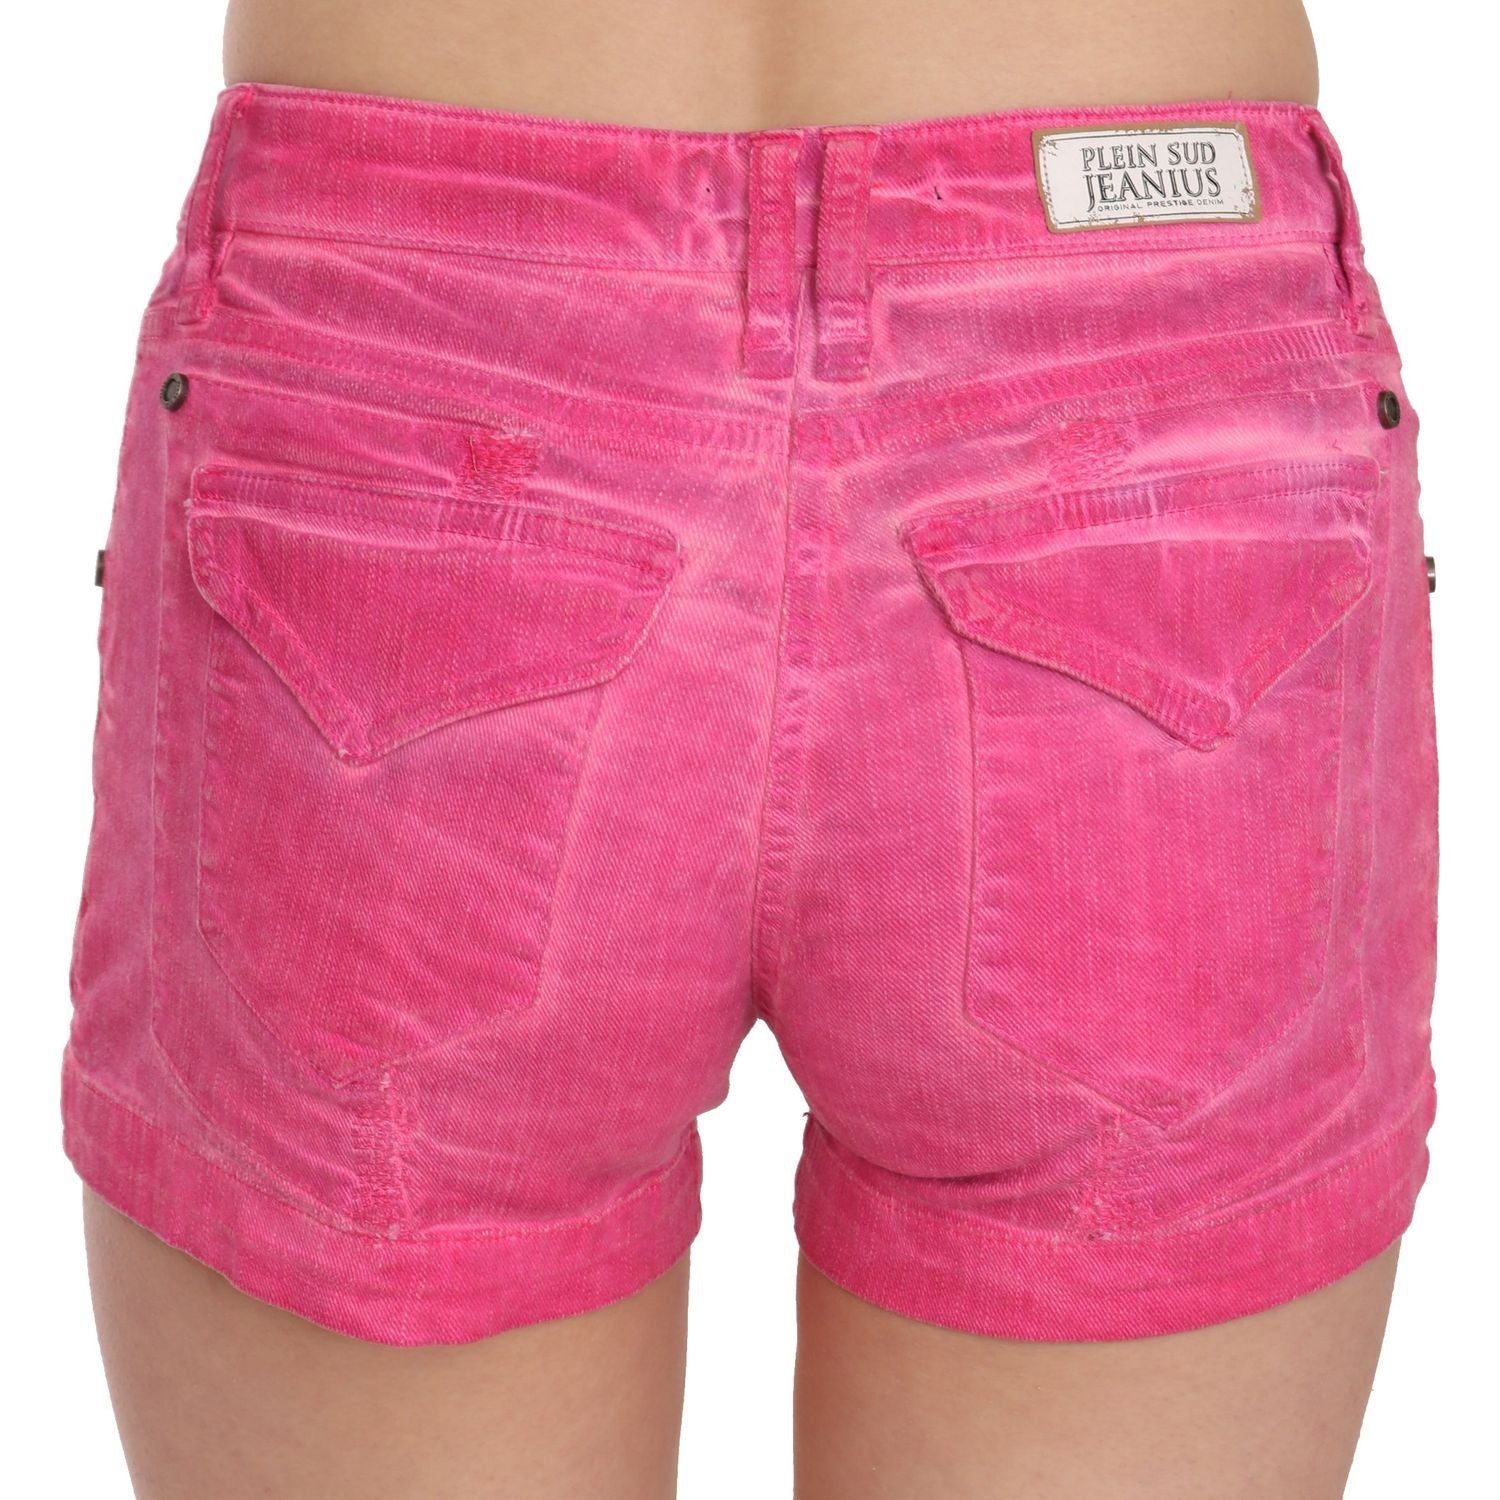 PLEIN SUD | Pink Mid Waist Cotton Denim Mini Shorts | McRichard Designer Brands